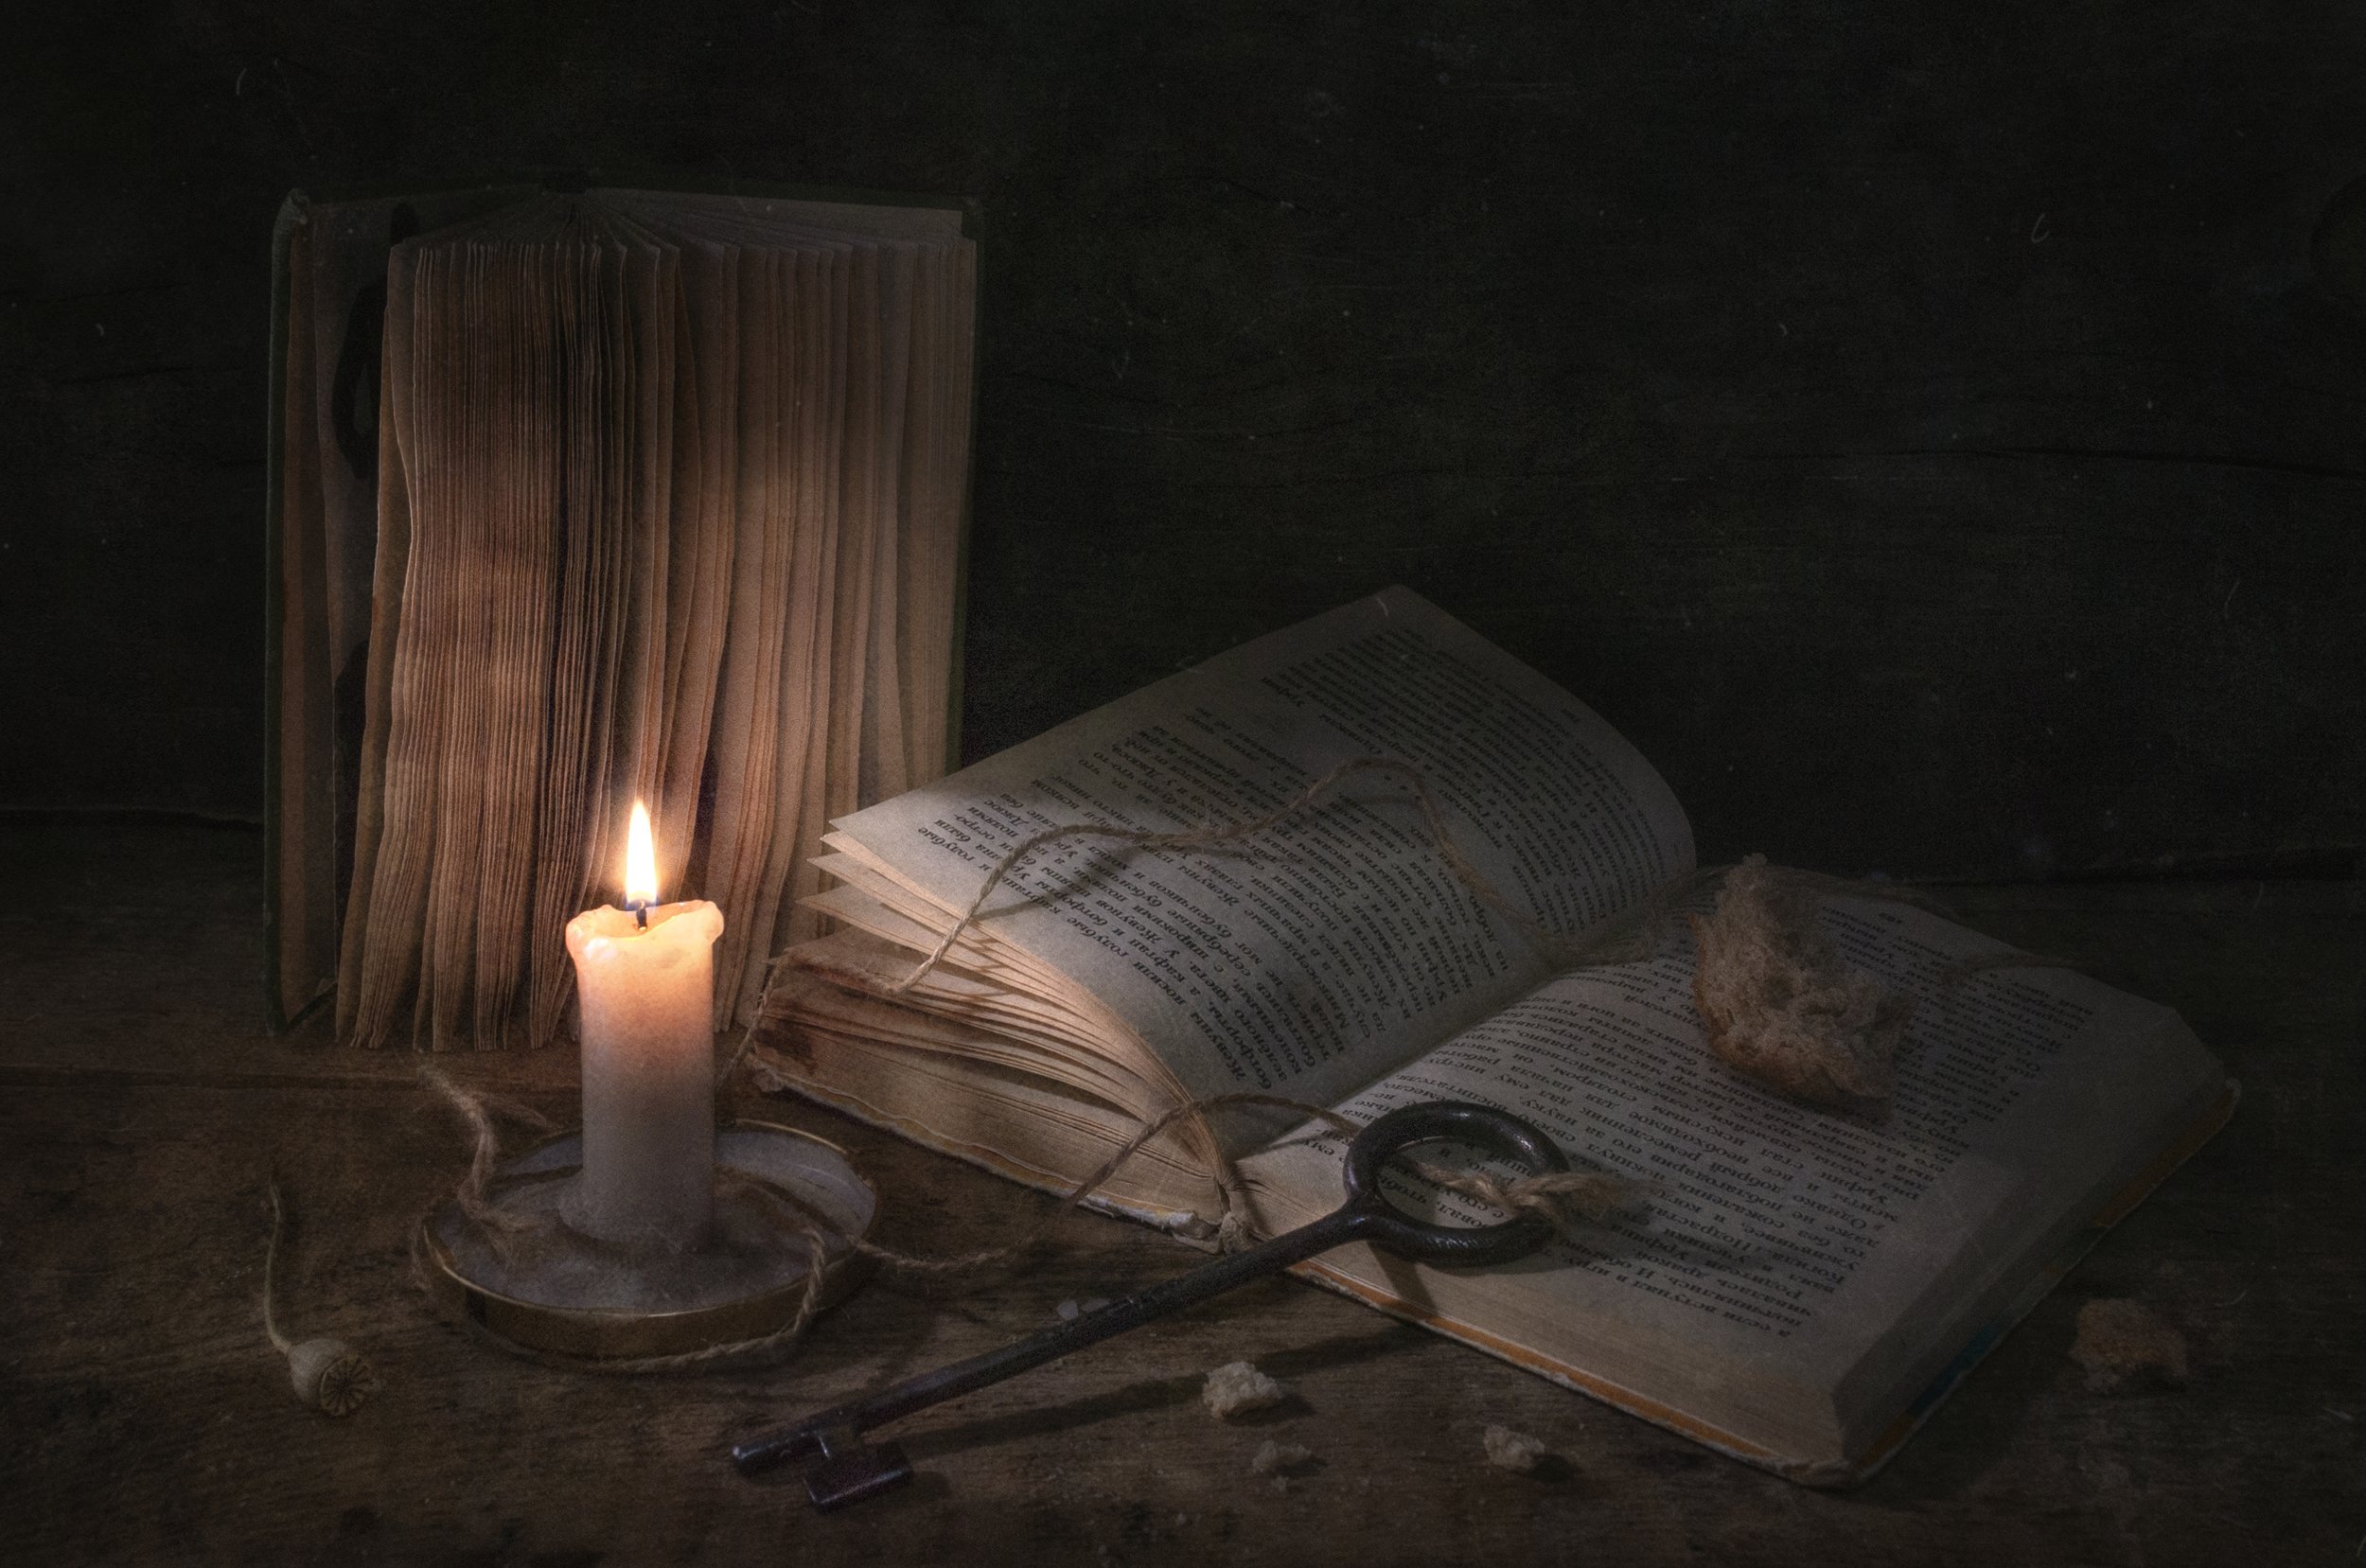 свет,чтение,книги,тёмный,вечер,свеча,пламя,огарок,ключ,корка хлеба,знания, Владимир Володин